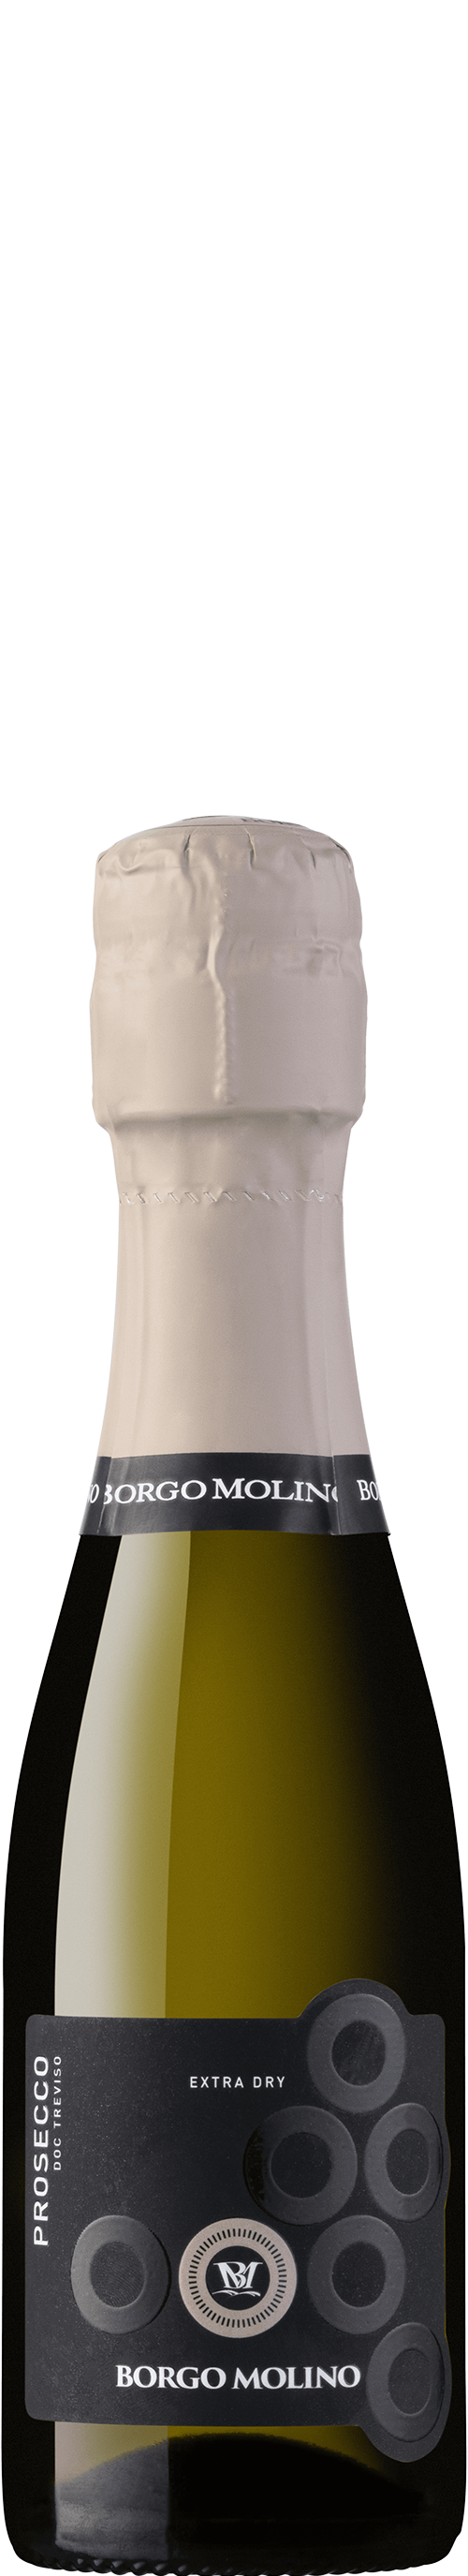 Borgo Molino Prosecco Extra Dry Treviso DOC, 0,2l